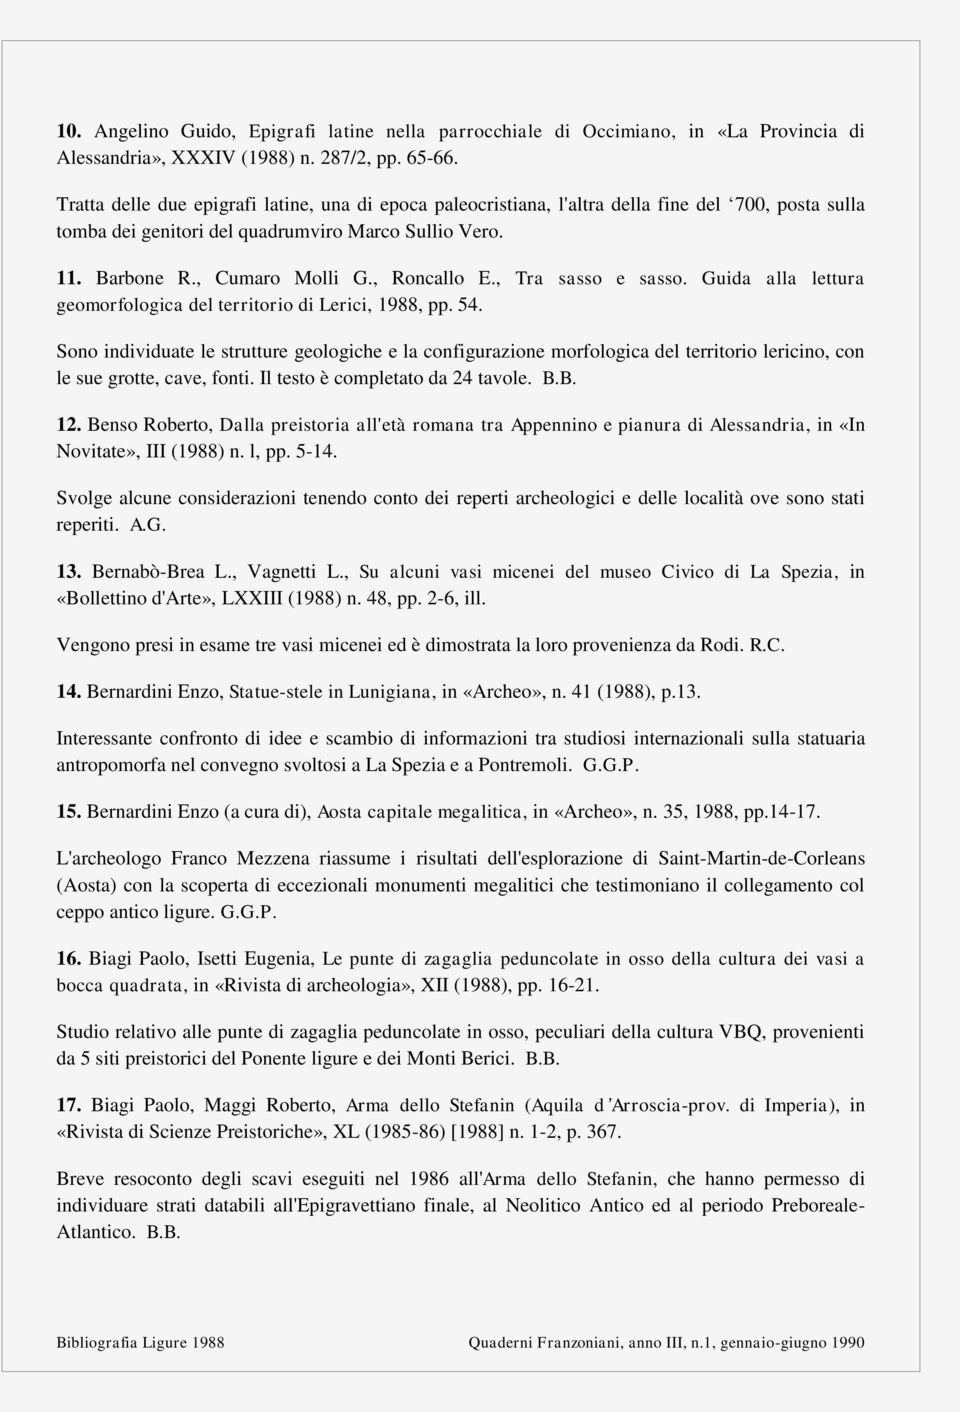 , Roncallo E., Tra sasso e sasso. Guida alla lettura geomorfologica del territorio di Lerici, 1988, pp. 54.